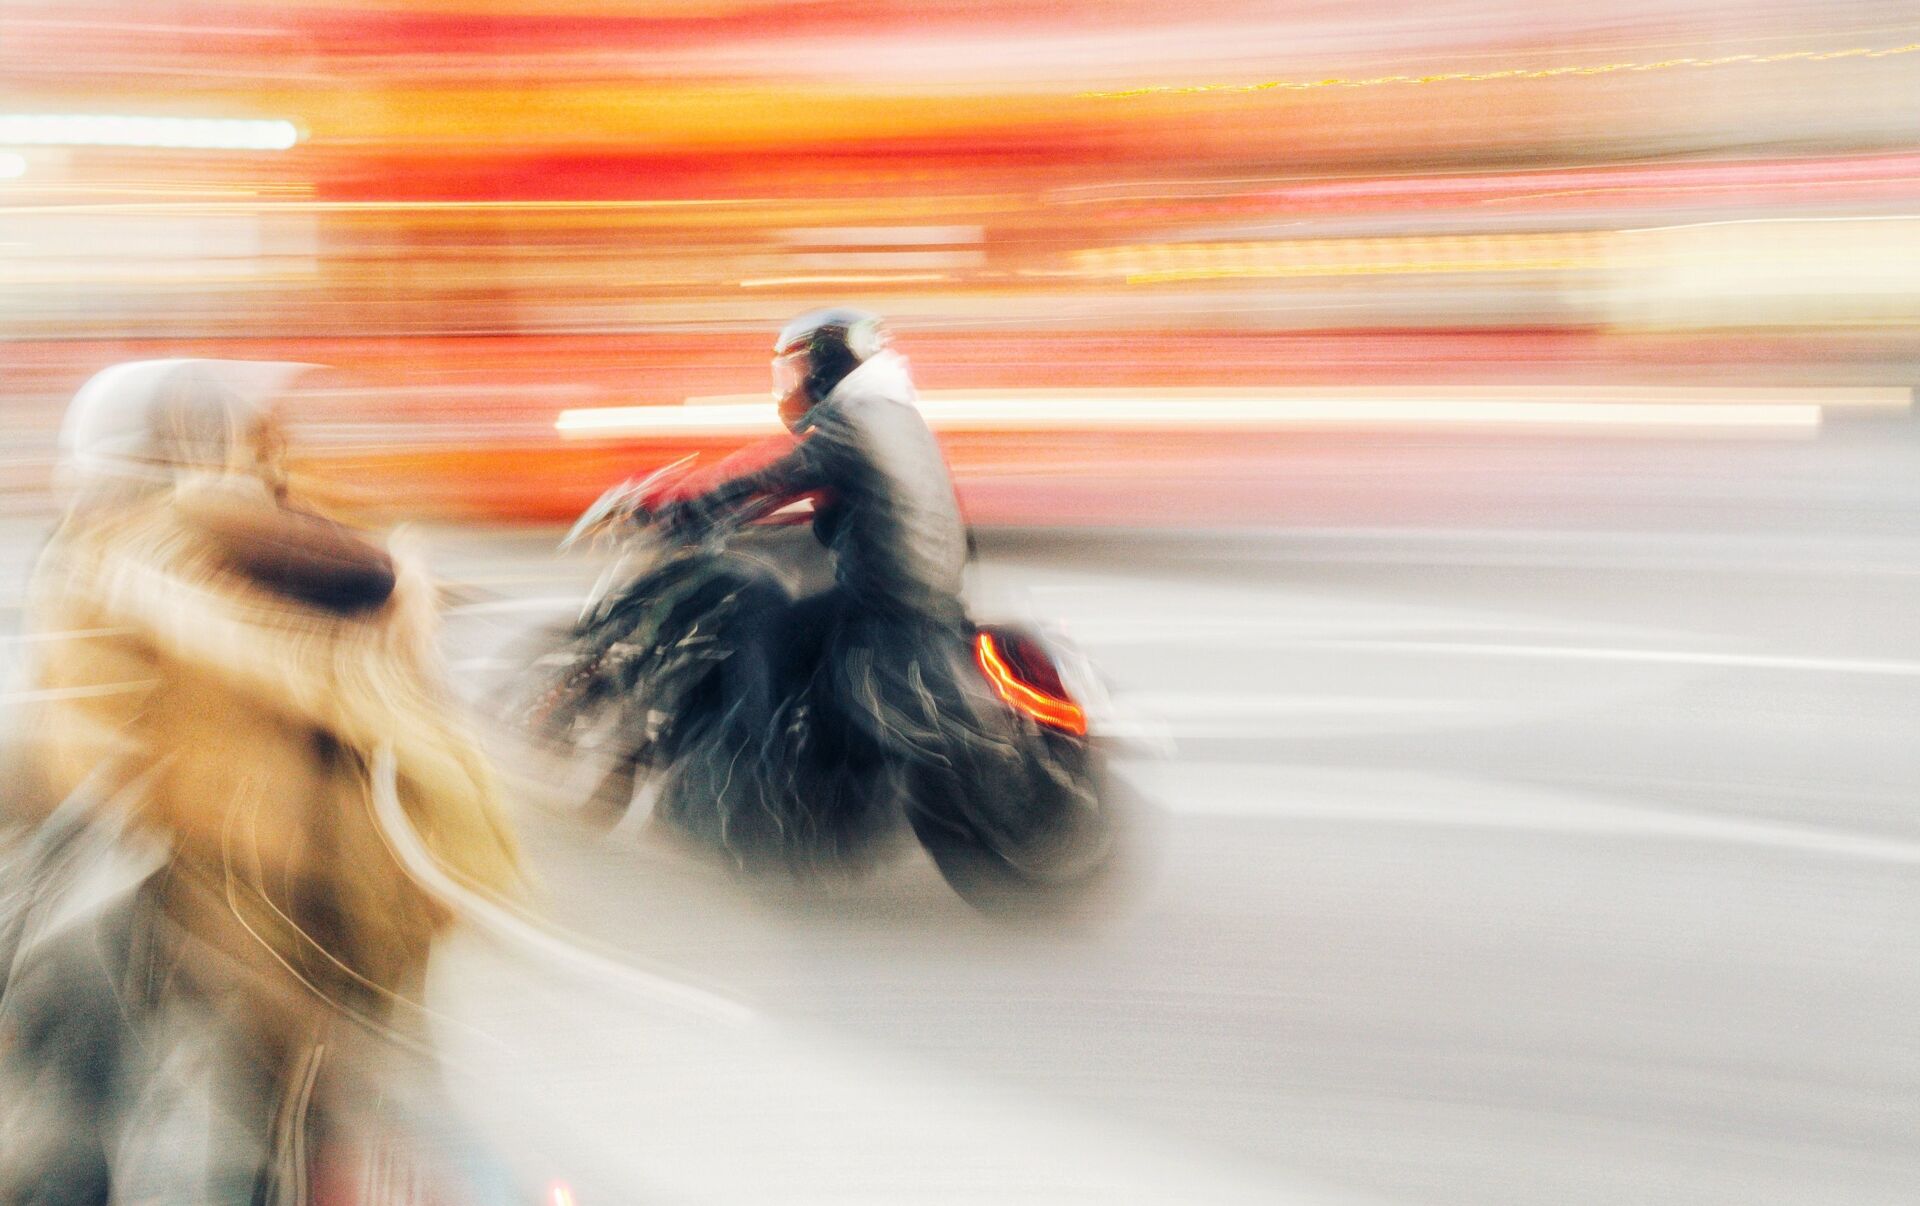 Новый догнать. Статусы мотоциклистов. Скорость мотоцикл конь картинка женщина.